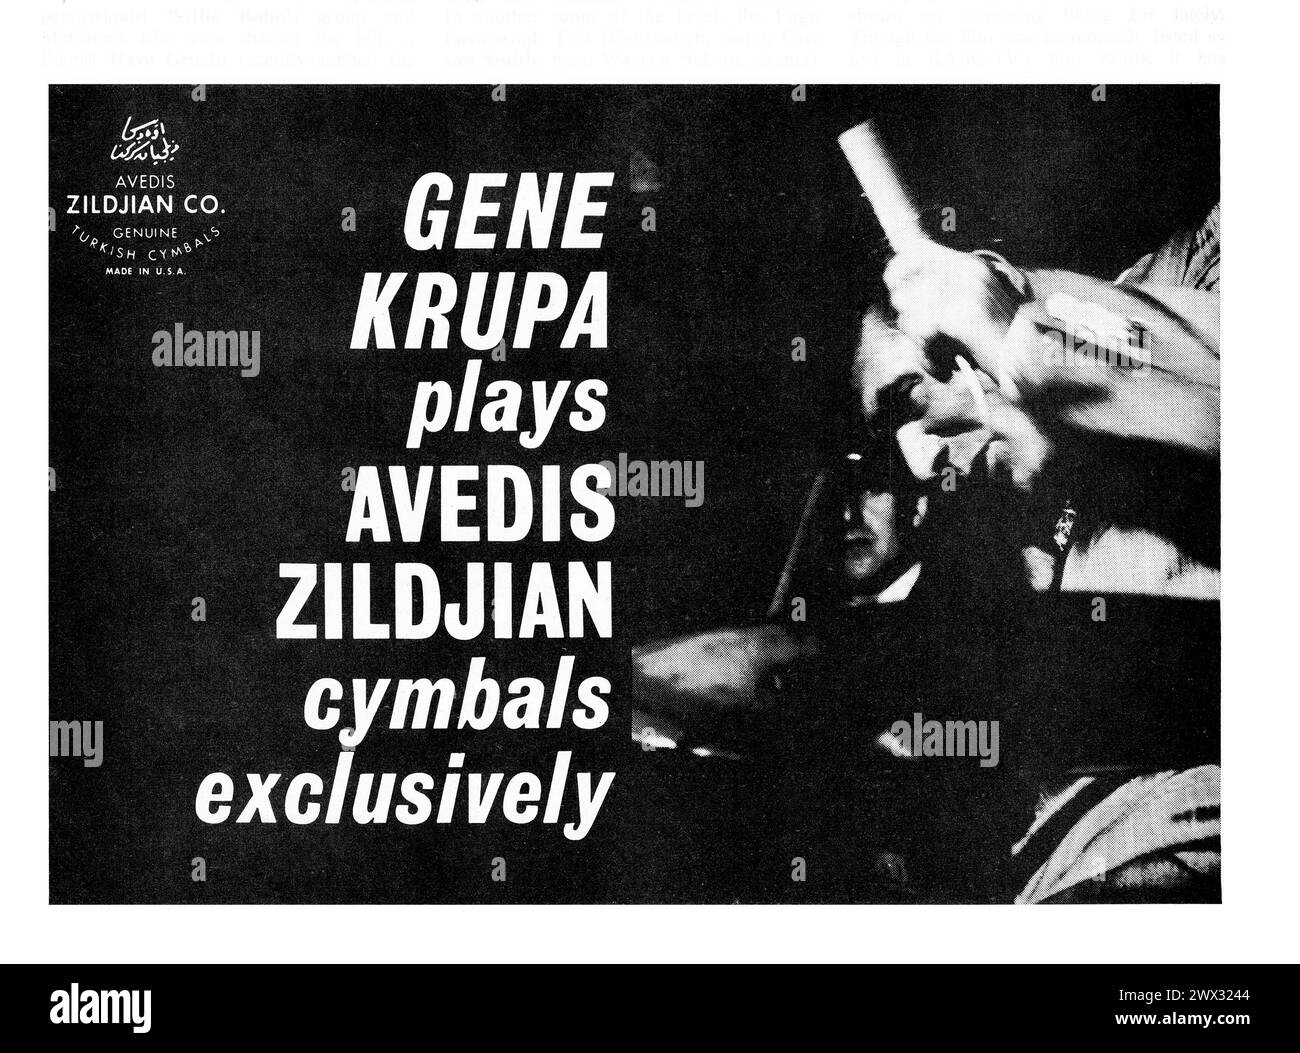 Une publicité d'un magazine de musique du milieu des années 1960 pour les fabricants de cymbales avis Zildjian. Il met en vedette la légende du tambour jazz, Gene Krupa Banque D'Images